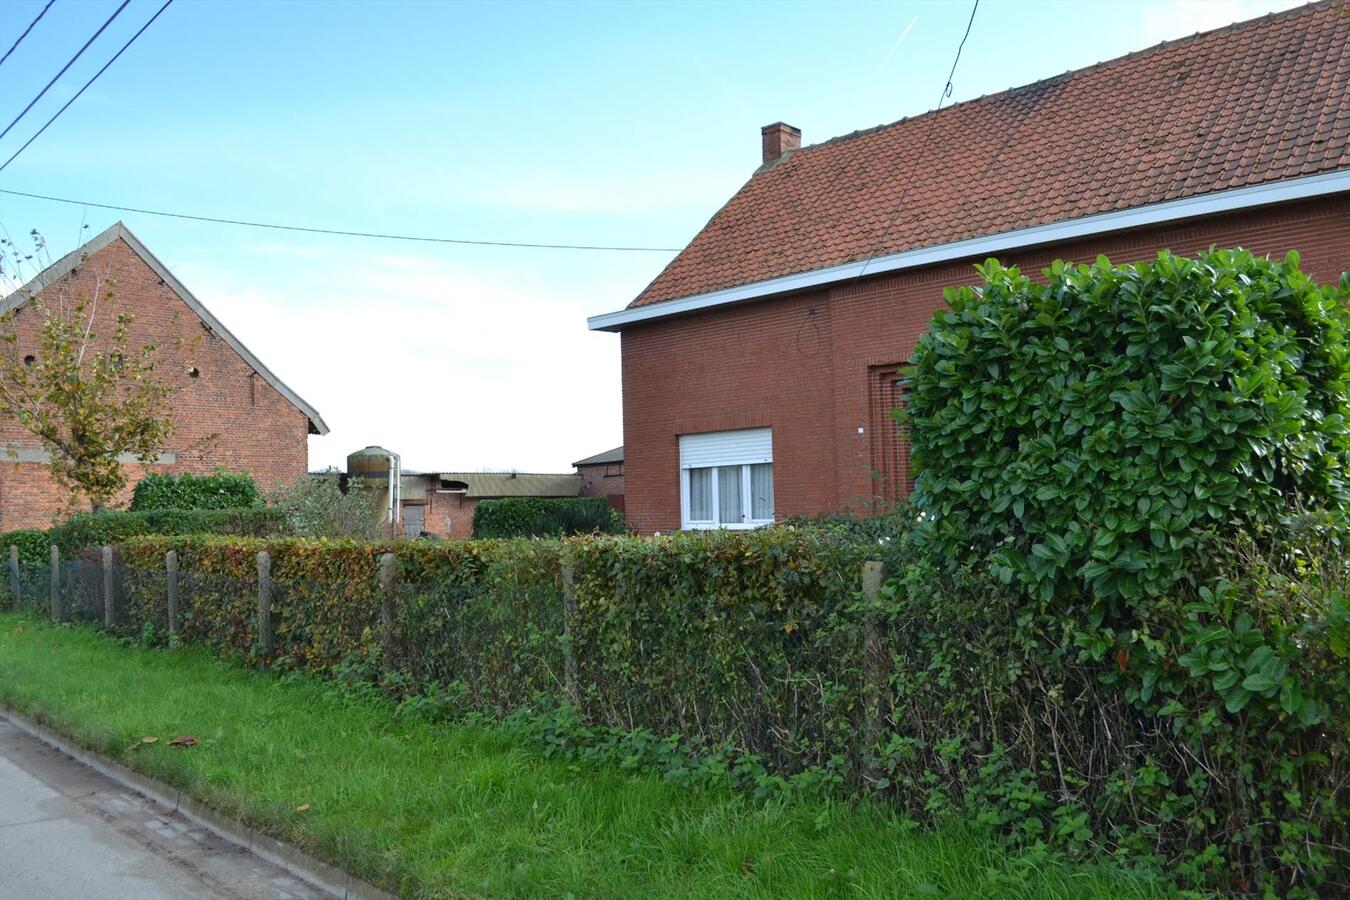 Property sold in Meerdonk